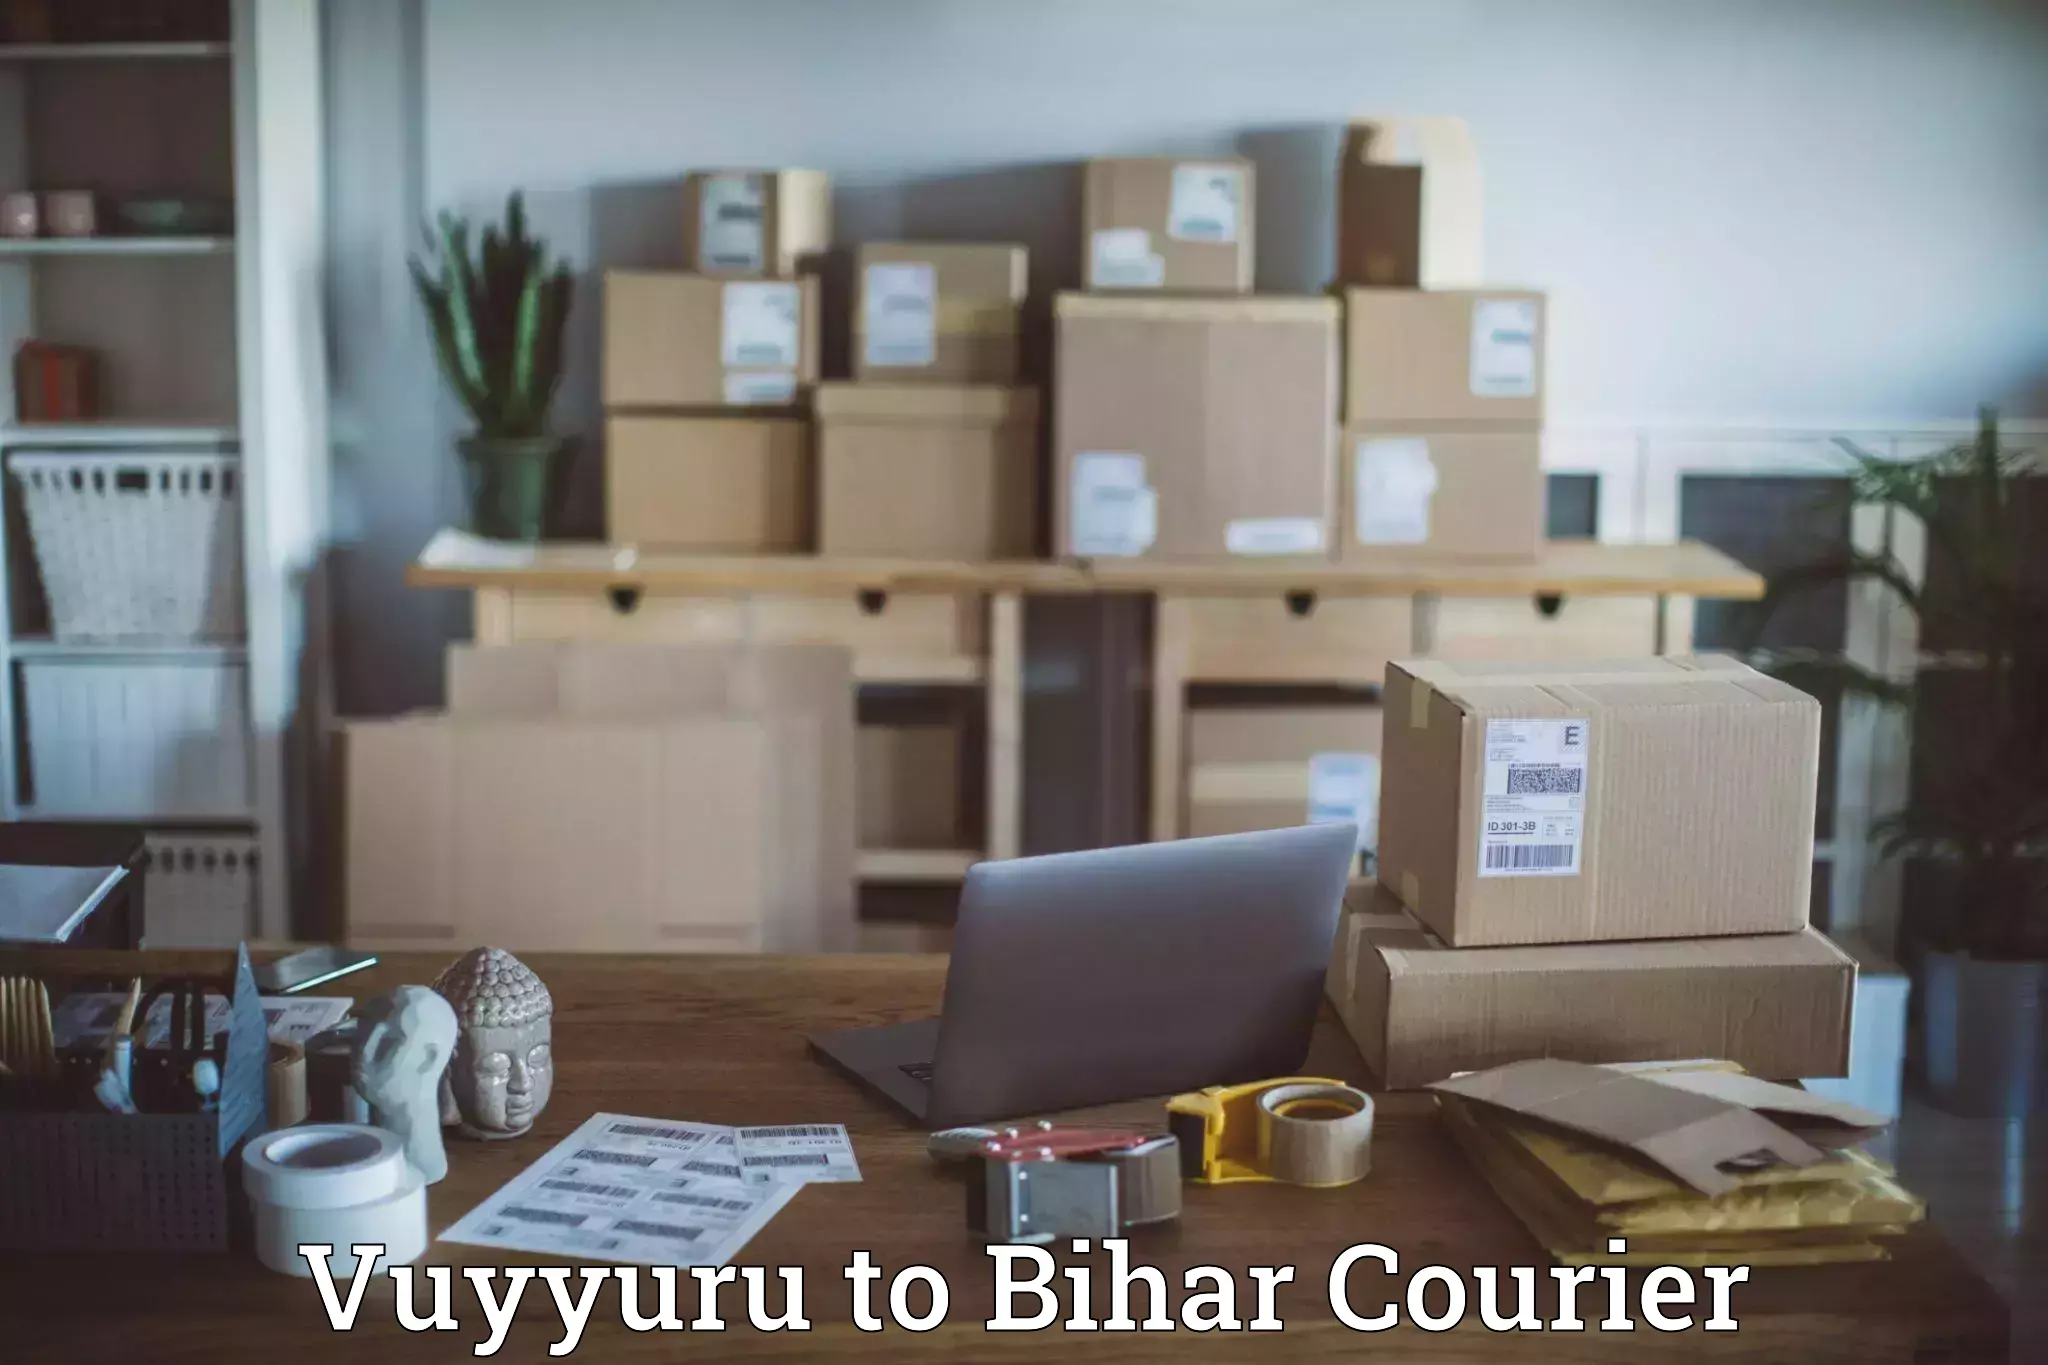 Courier services in Vuyyuru to Goh Aurangabad